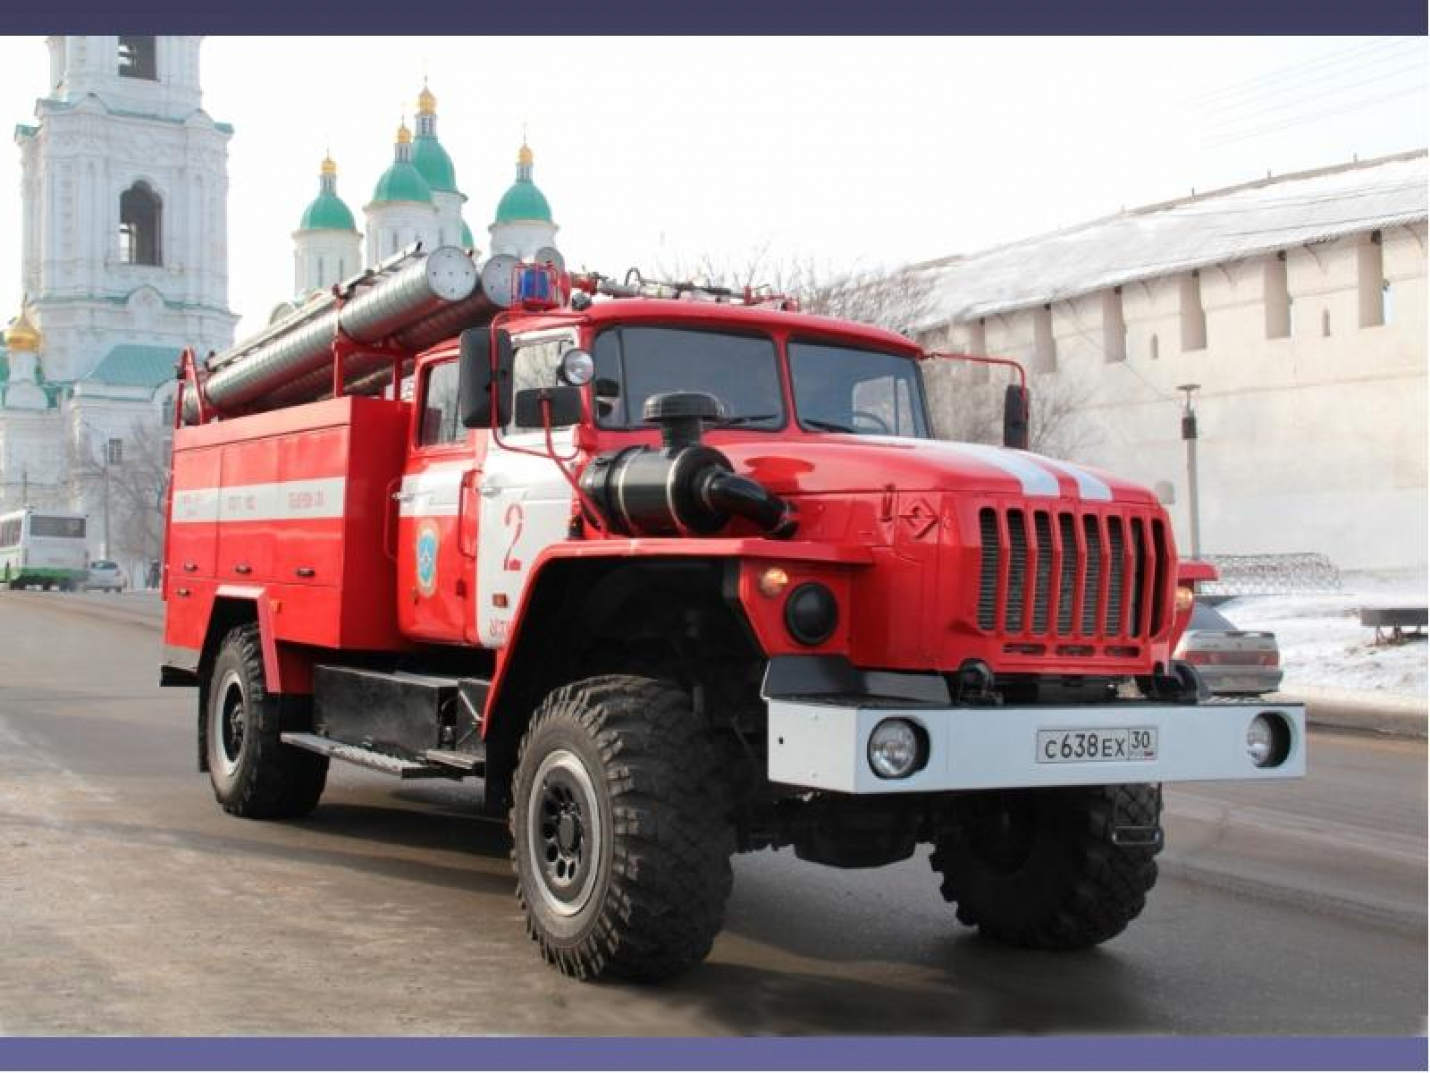 Машина пожарной службы. Пожарная машина. Машина "пожарная служба". Автомобили пожарной охраны. Авто пожарной службы.